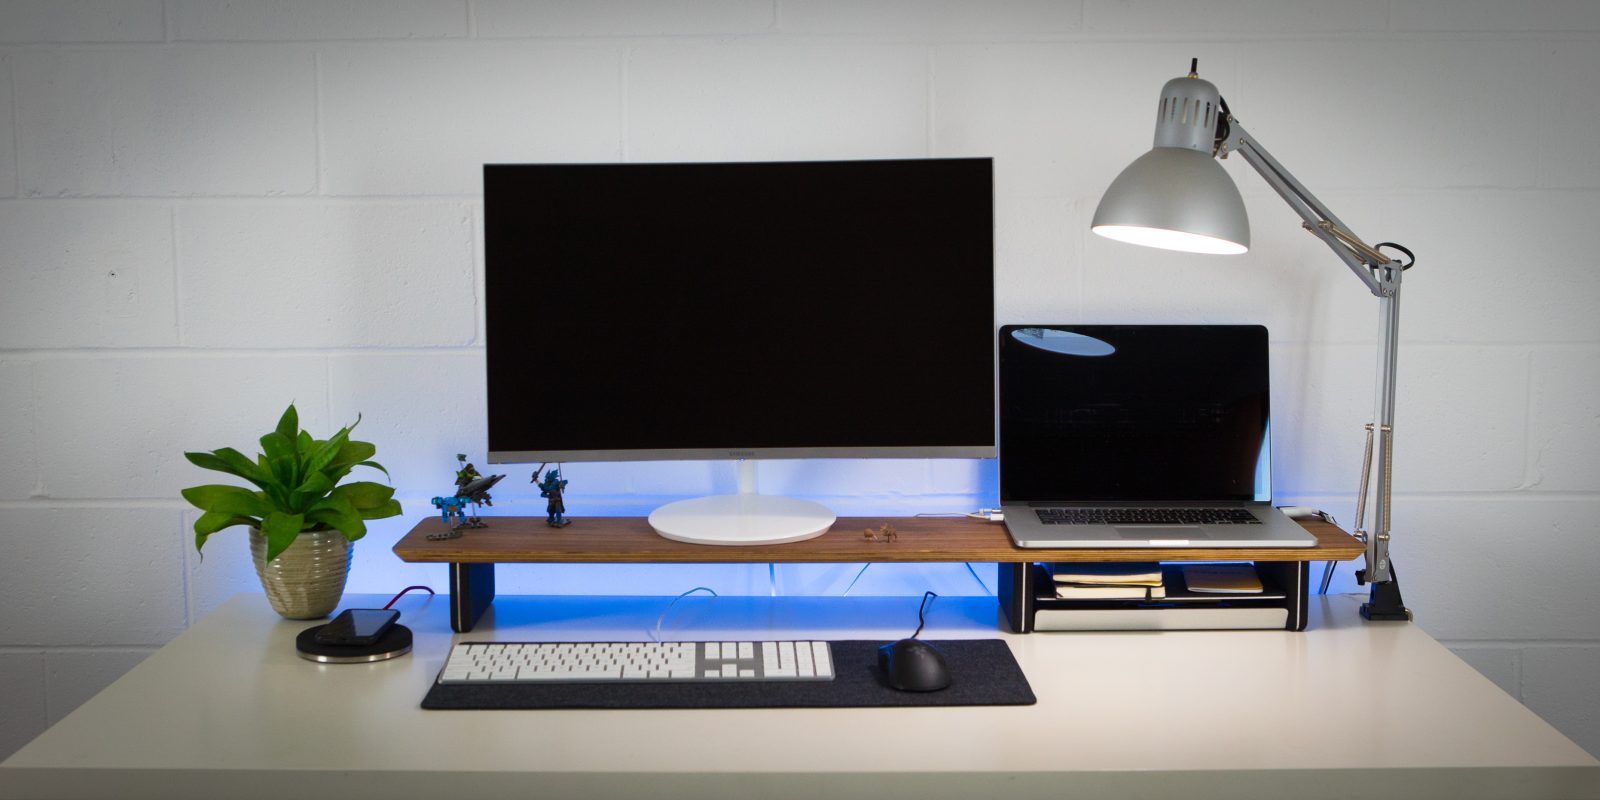 Grovemade Desk Shelf Review Elevate Your Desk W A Shelf And Qi Pad